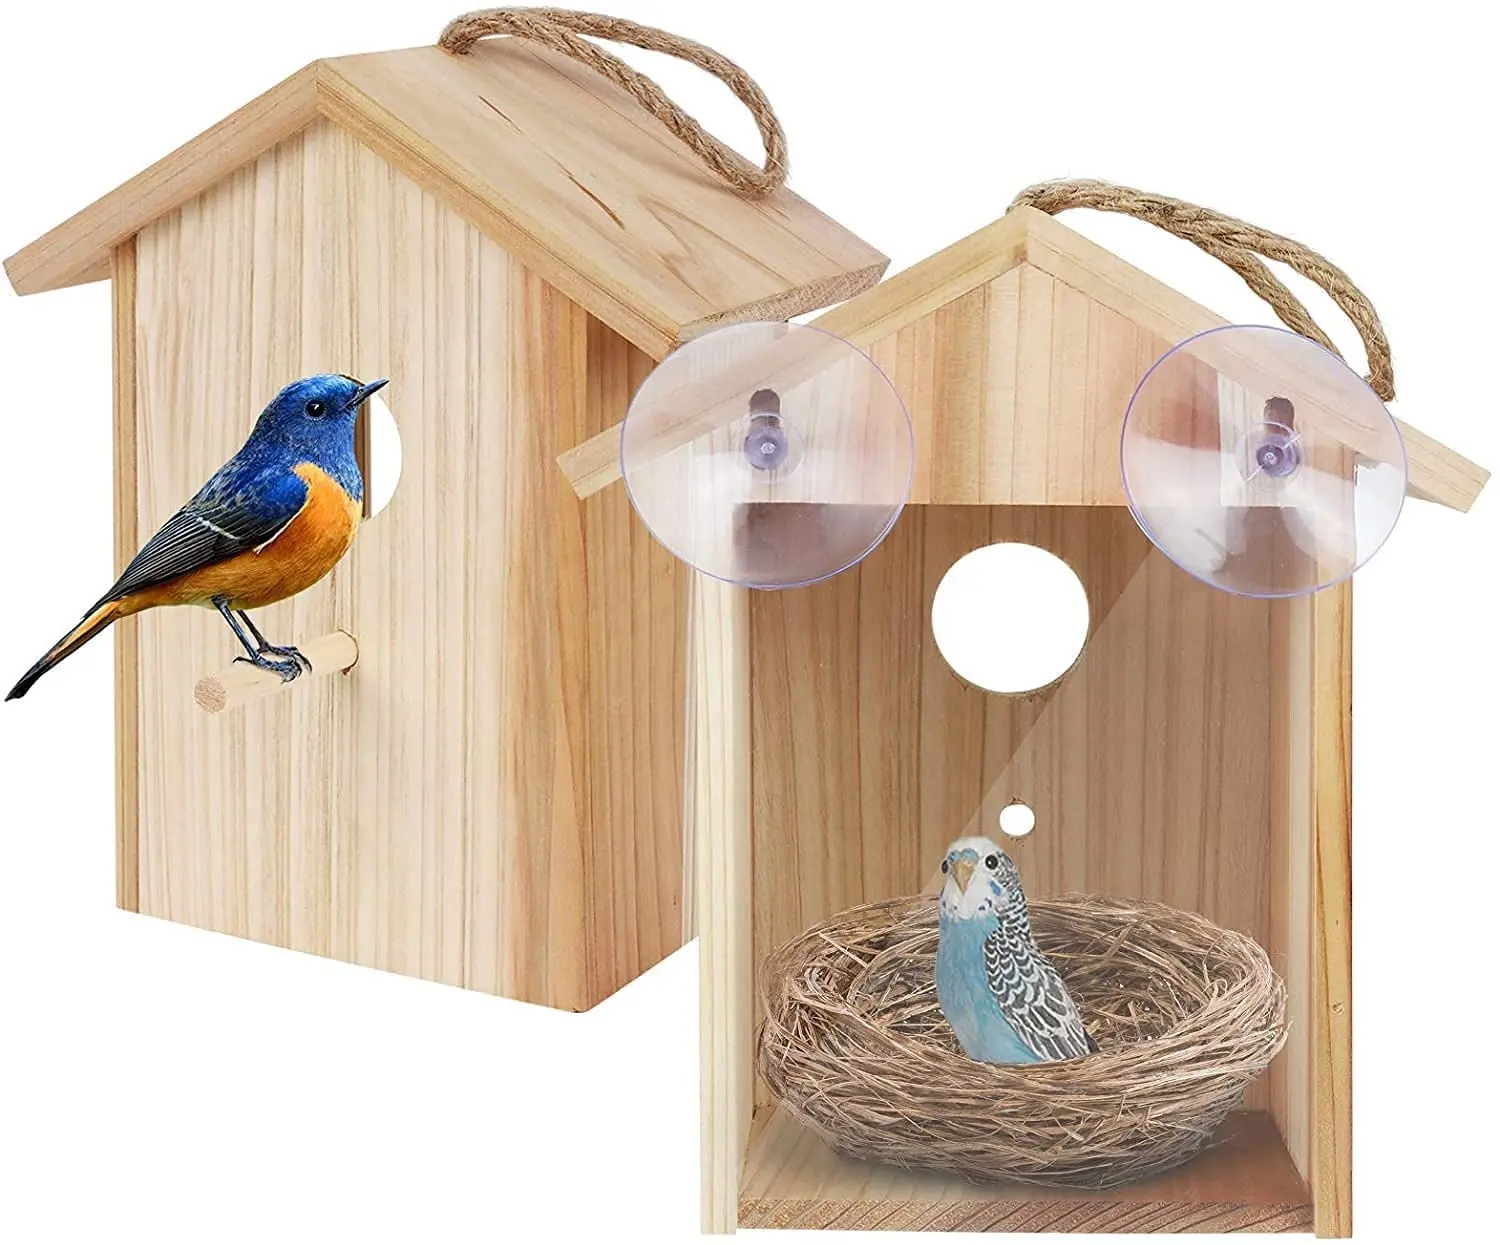 Mangiatoia per uccelli per finestre con ventose robuste e corda per appendere all'aperto prospettiva birdhouse in legno design trasparente per nido d'uccello